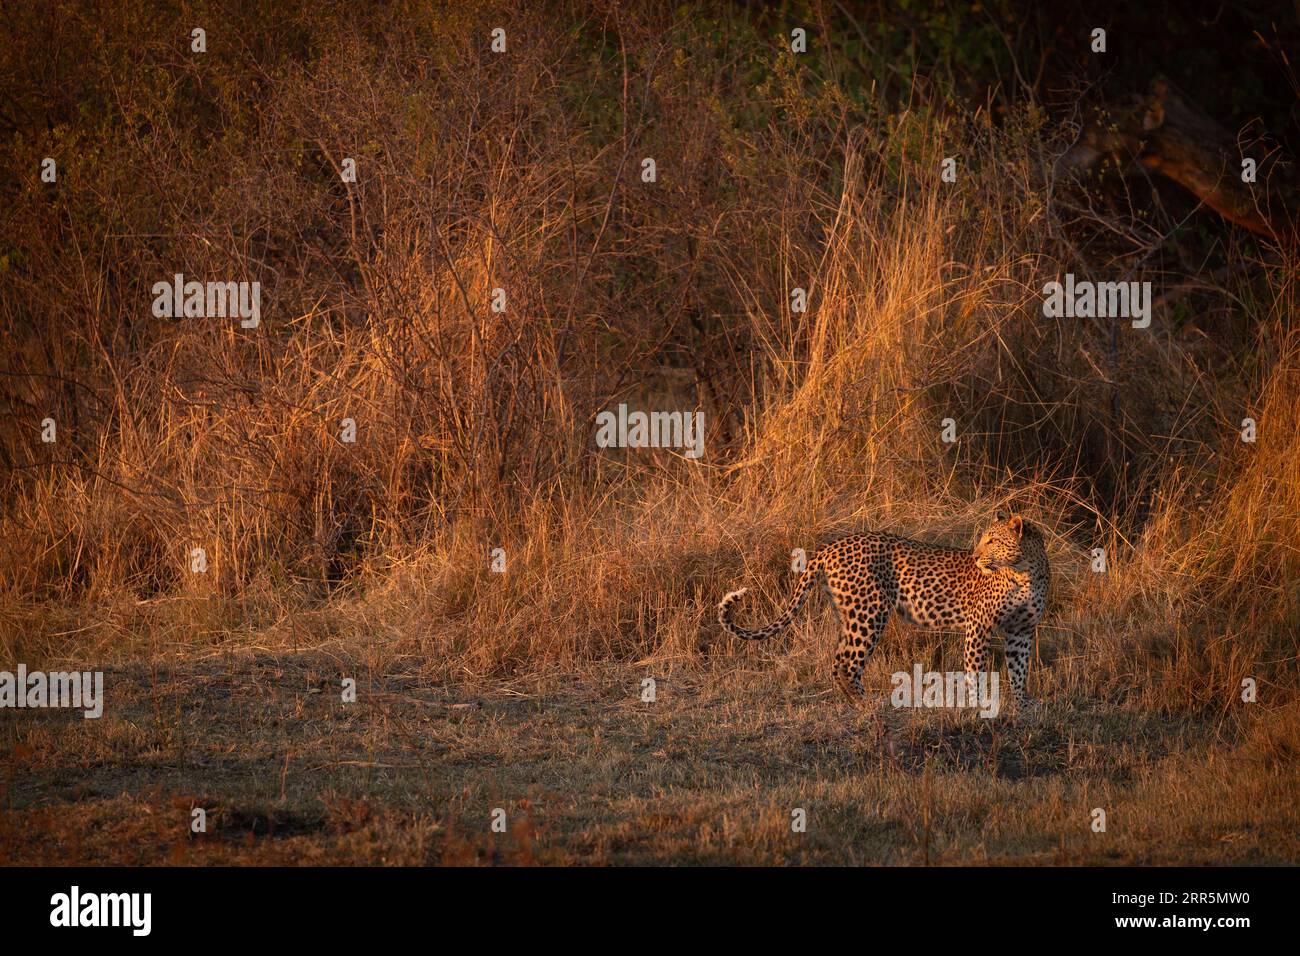 Gli ultimi raggi di un tramonto ardente illuminano la savana che circonda un leopardo. Foto Stock